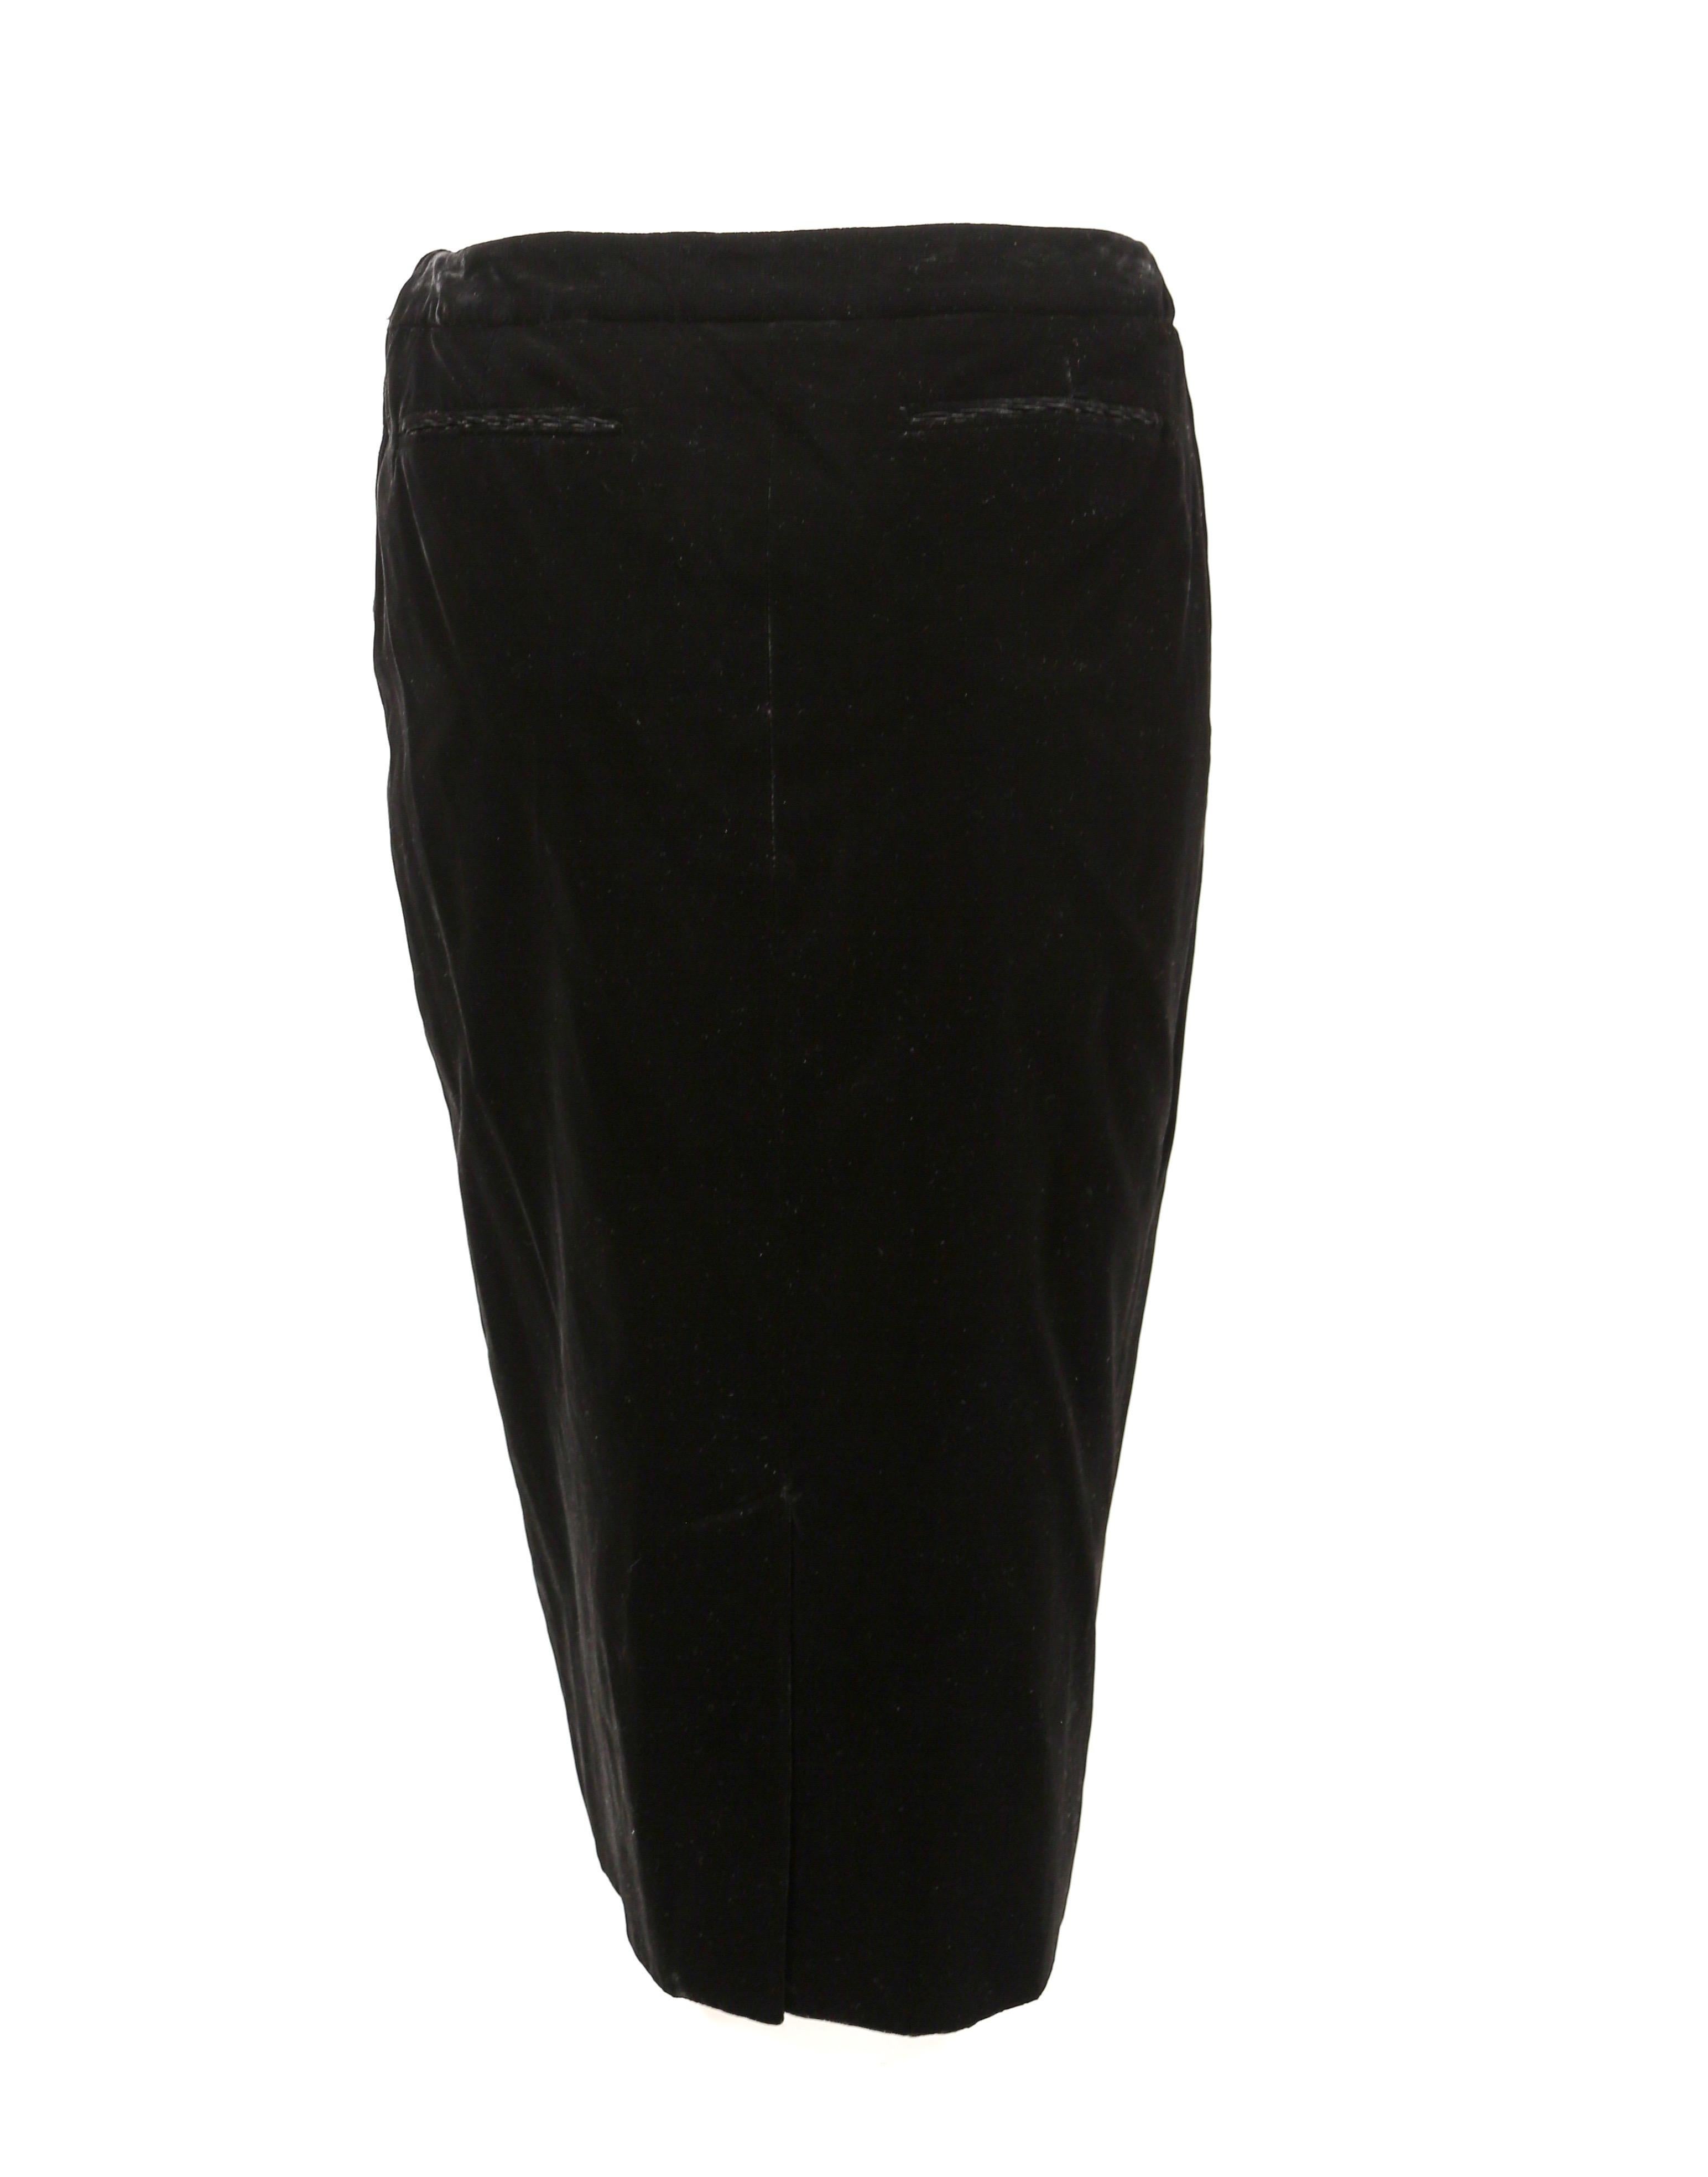 Women's 2002 TOM FORD for YVES SAINT LAURENT black velvet runway skirt suit